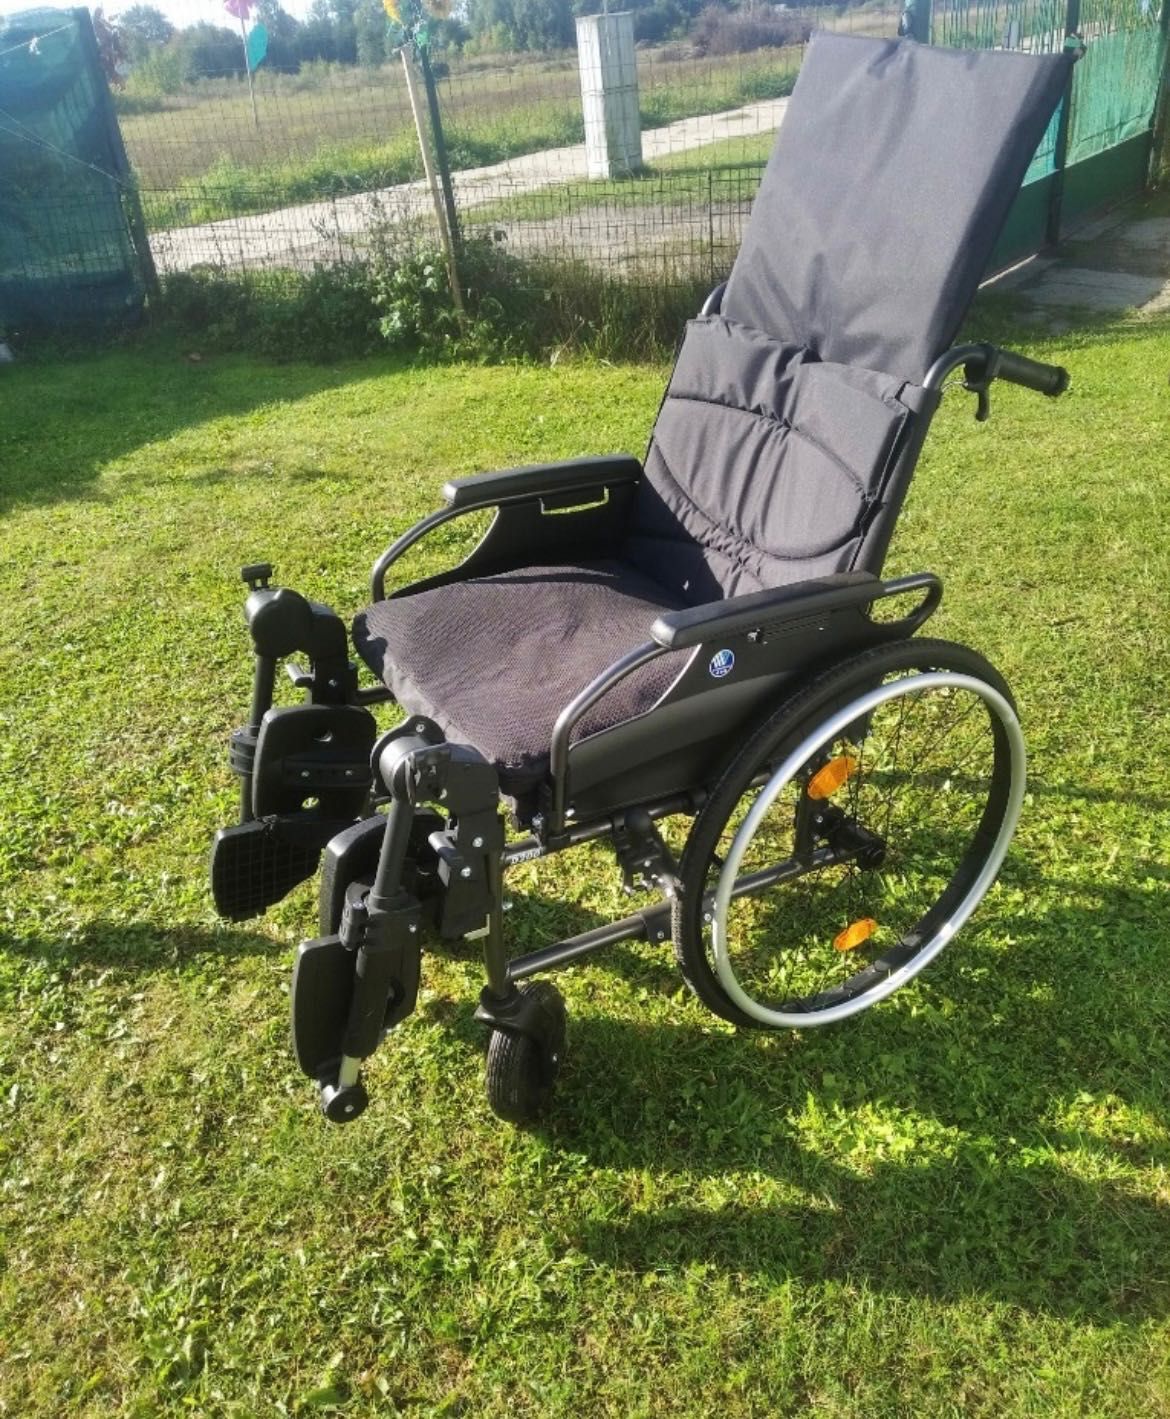 Wózek inwalidzki nowy